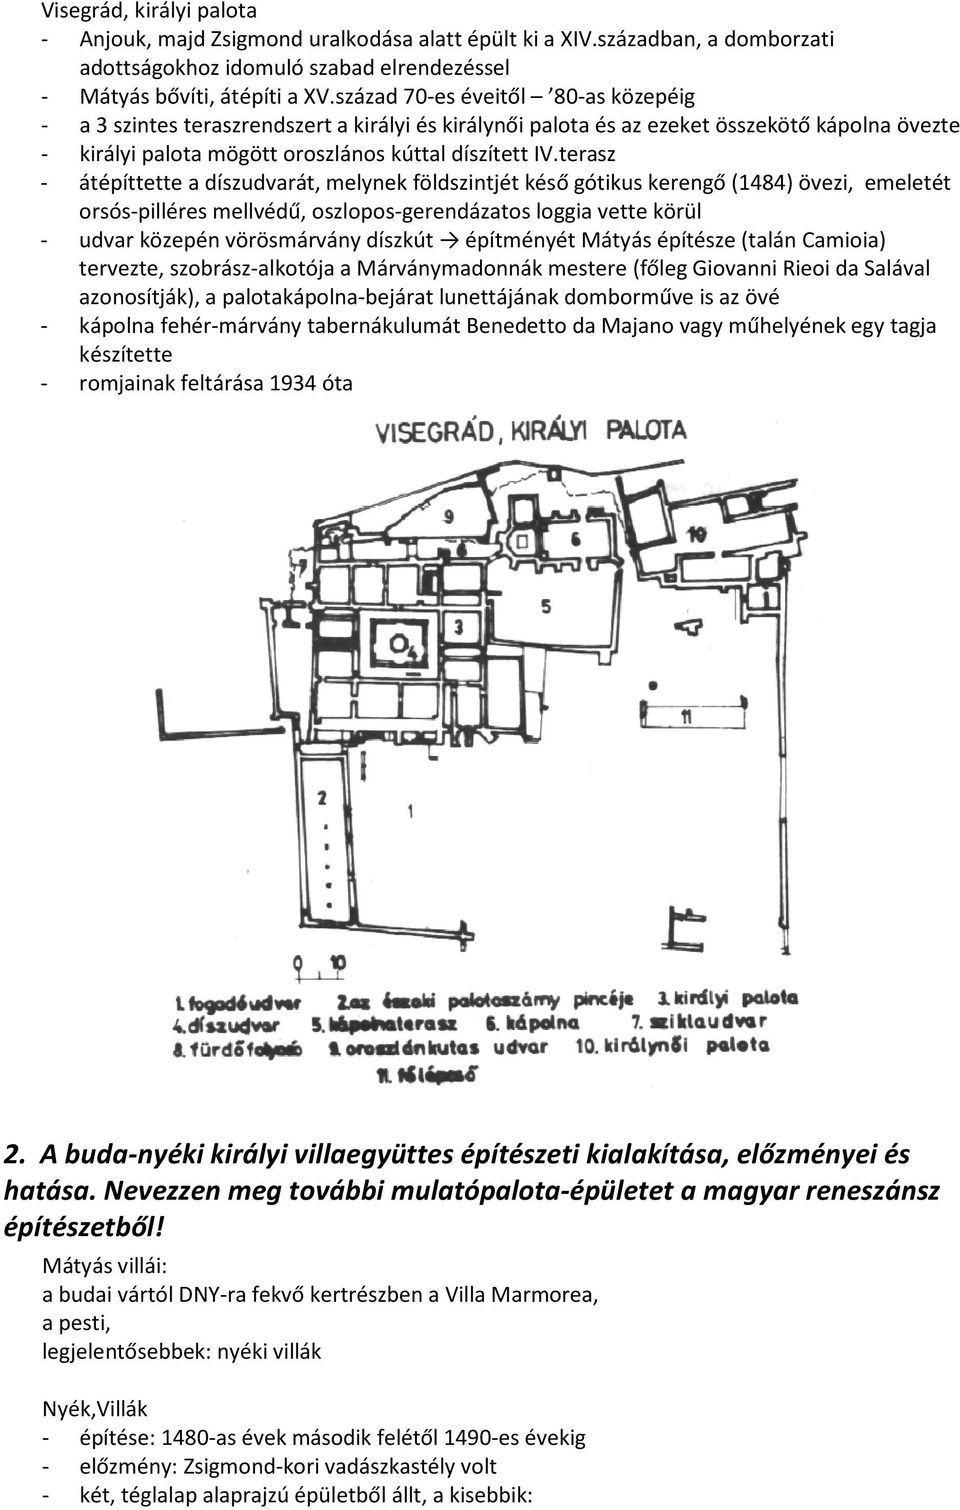 terasz - átépíttette a díszudvarát, melynek földszintjét késő gótikus kerengő (1484) övezi, emeletét orsós-pilléres mellvédű, oszlopos-gerendázatos loggia vette körül - udvar közepén vörösmárvány